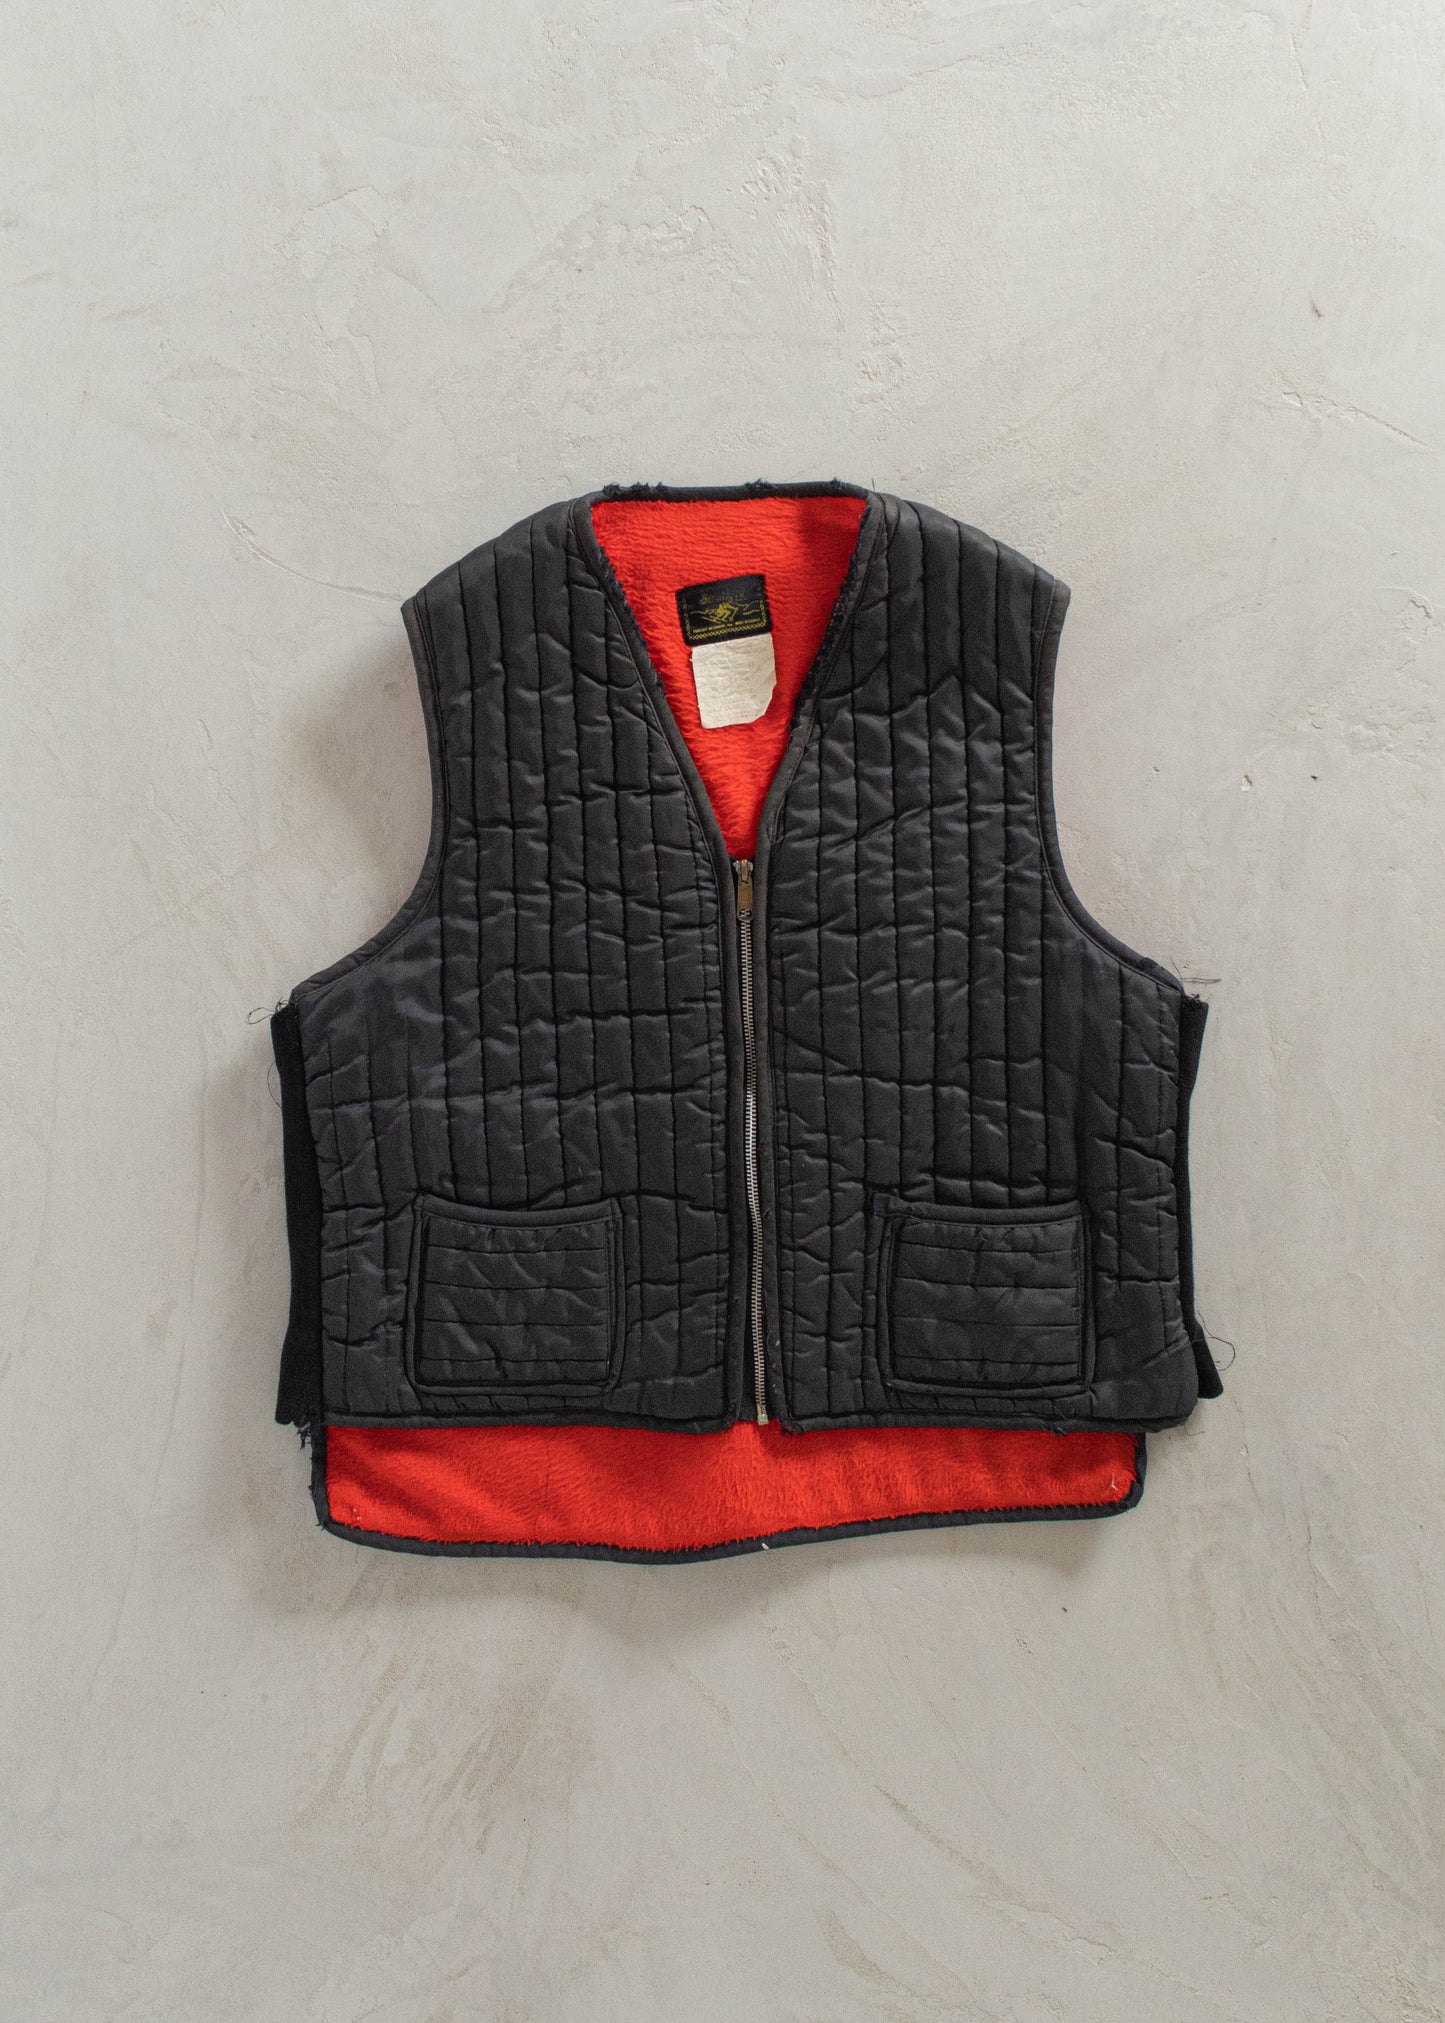 1980s Stratford Nylon Sherpa Lined Vest Size M/L